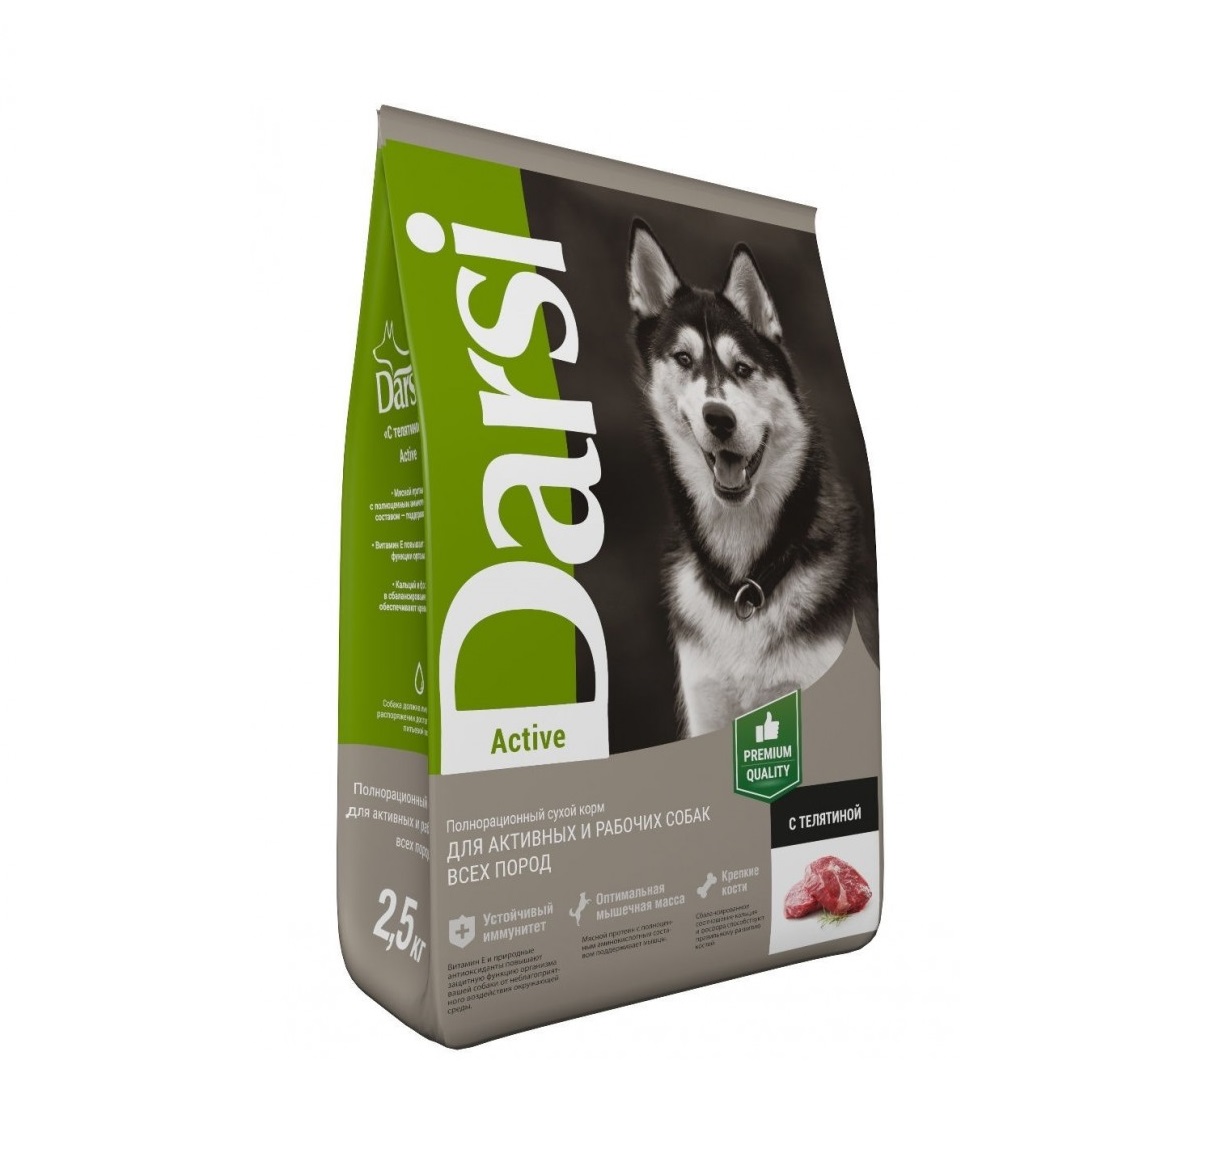 Дарси 2,5кг - Телятина Актив, для собак (Darsi)